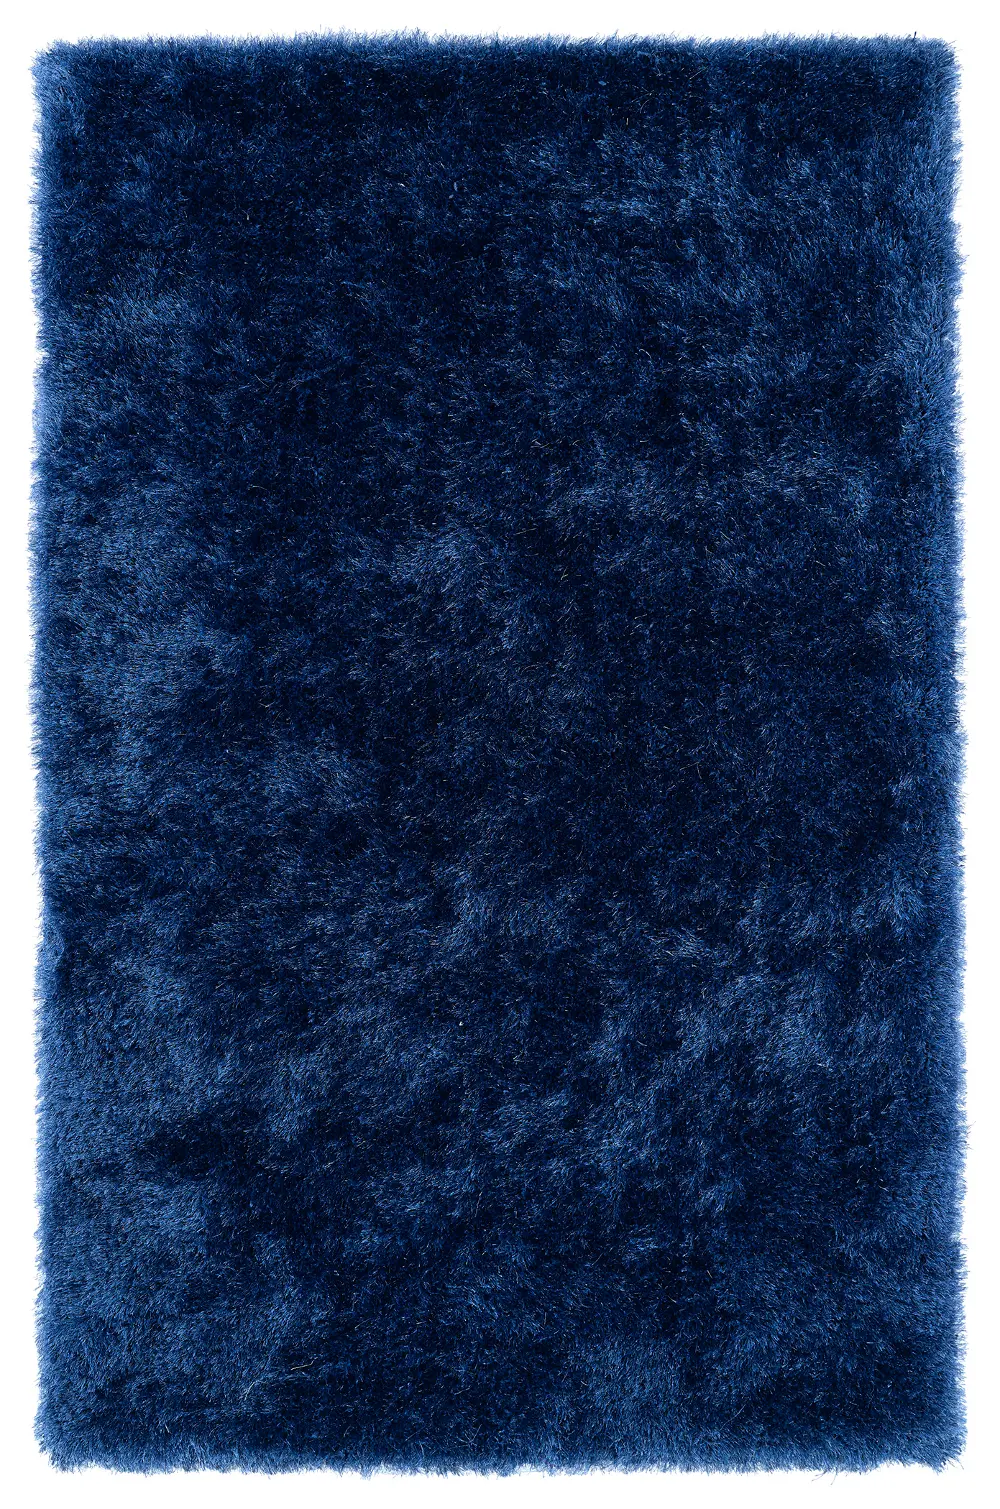 8 x 10 Large Denim Blue Shag Rug - Posh-1